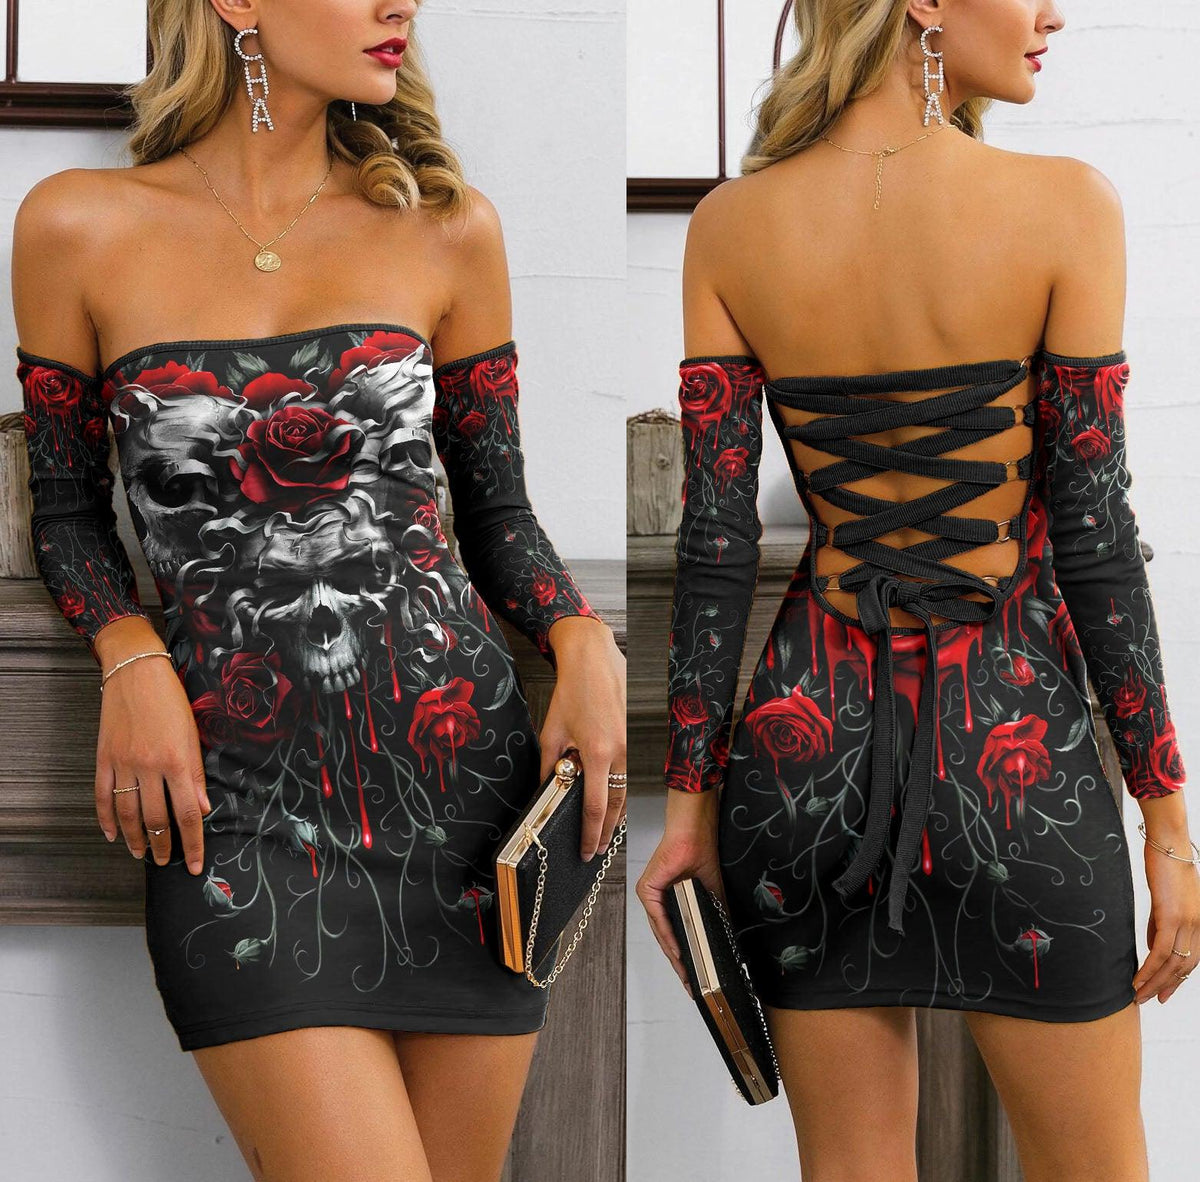 Skull Gothic Red Rose Off-shoulder Back Lace-up Dress - Wonder Skull